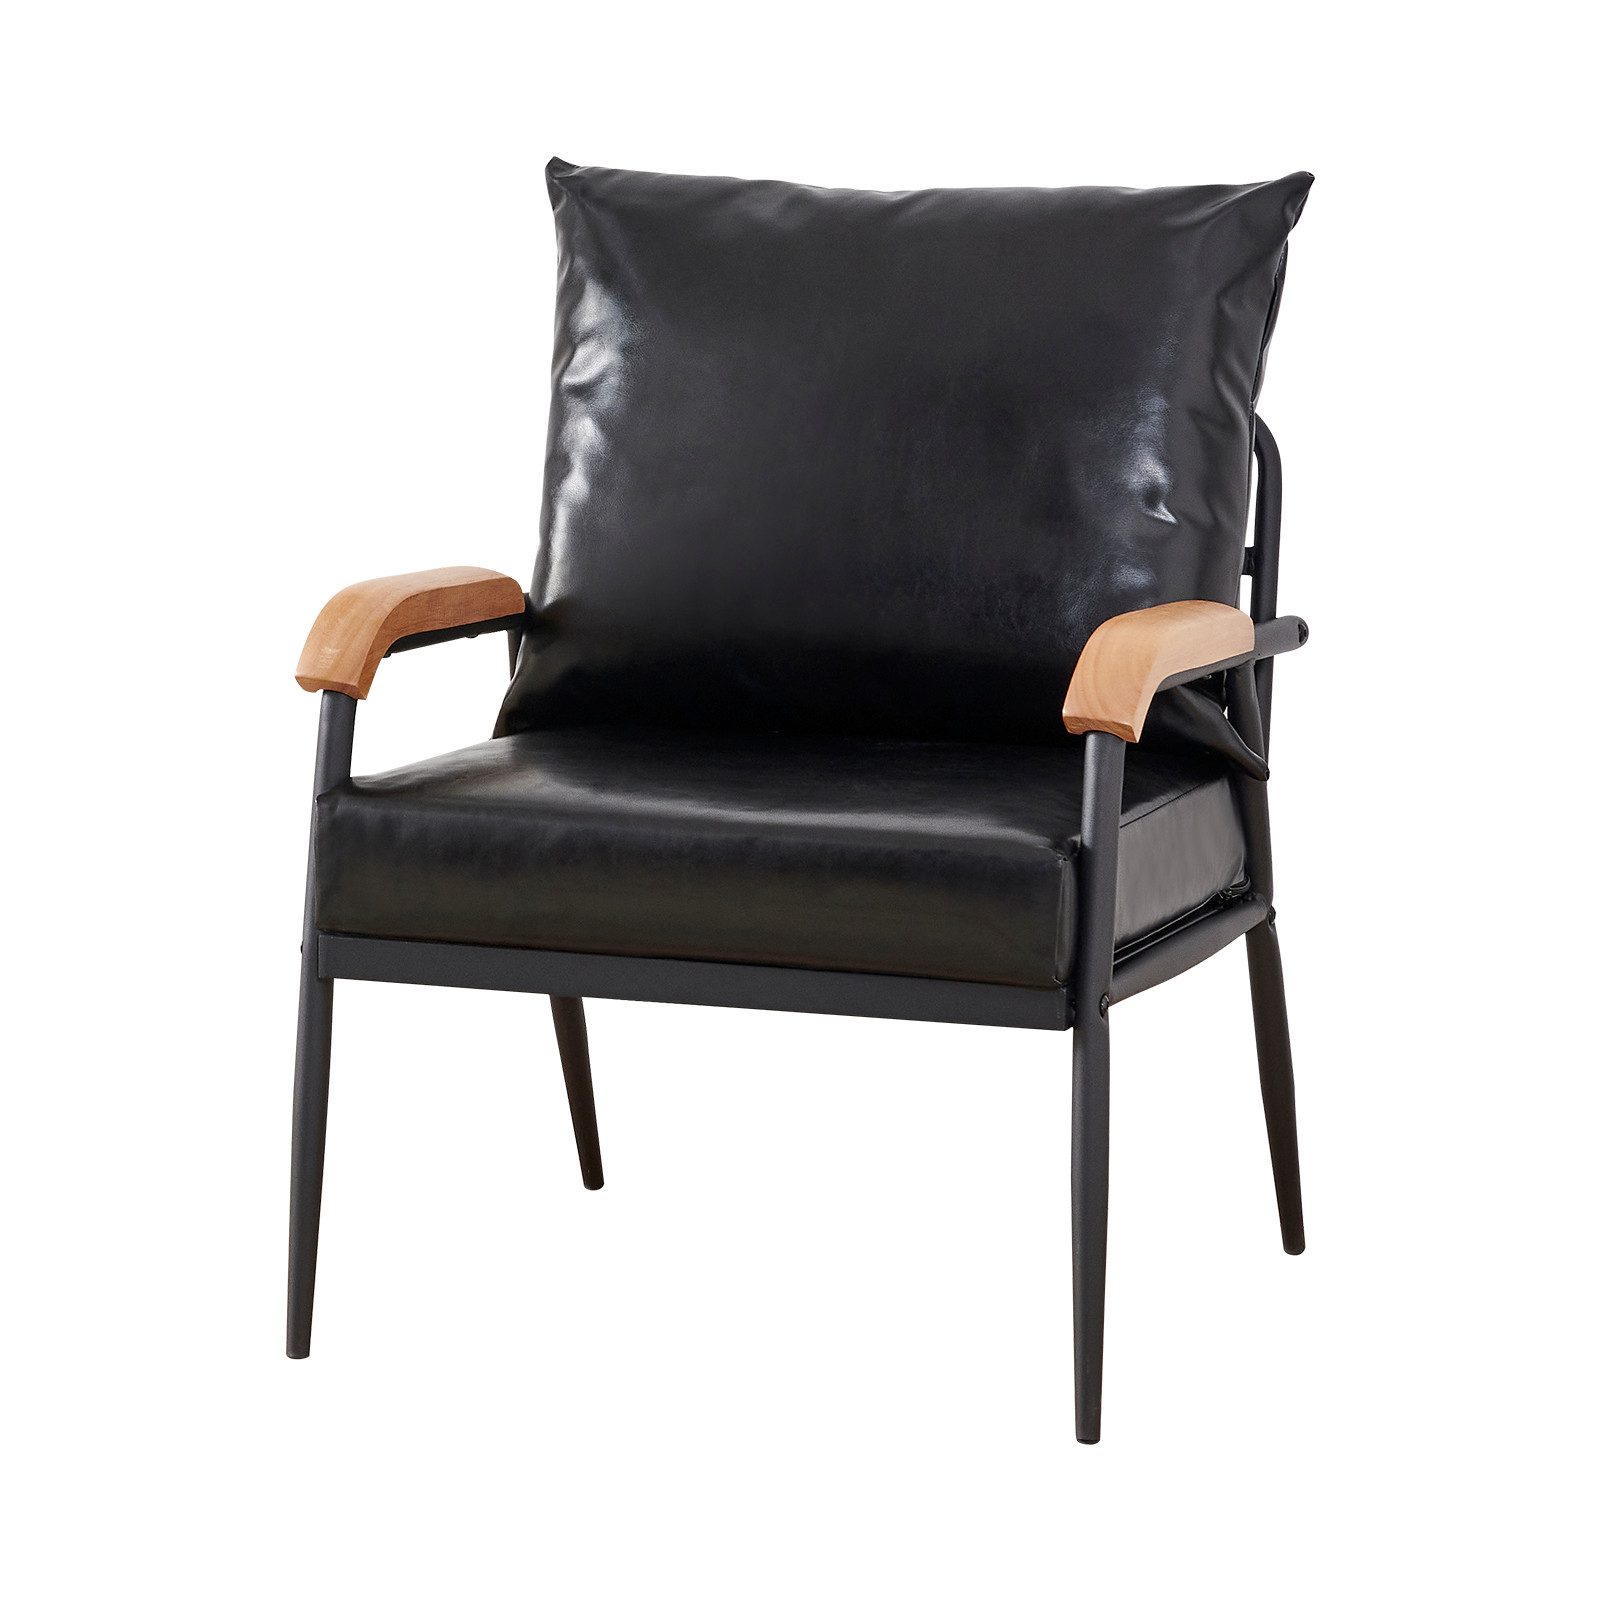 CLIPOP Relaxsessel Einzelsofa, mit Relaxfunktion, Kunstleder Couch mit Metallbeine, 61x60x83cm